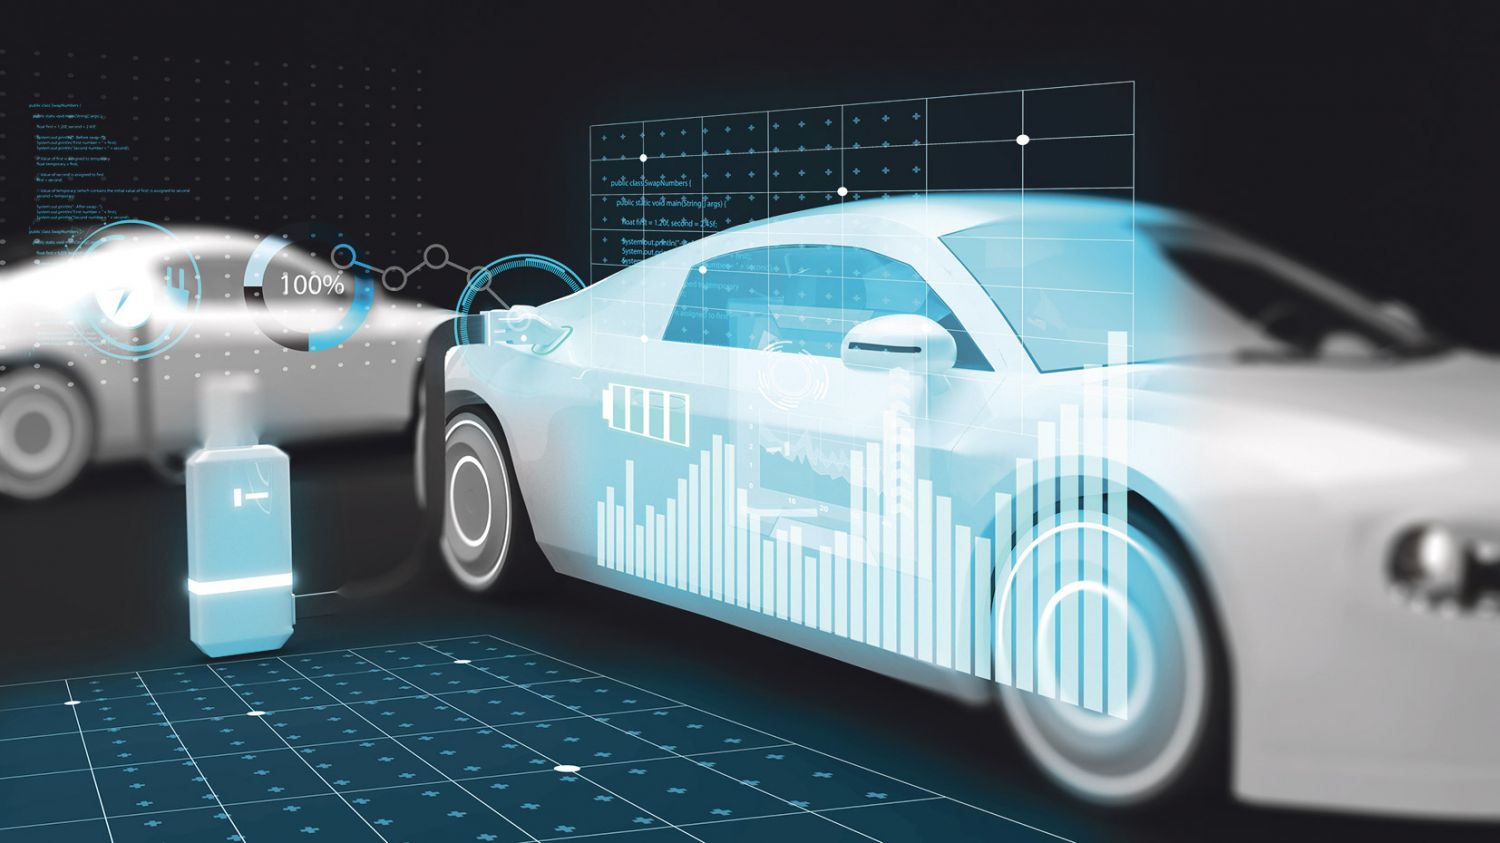 Elektroauto mit hologrammhafter Darstellung des Batteriestandes